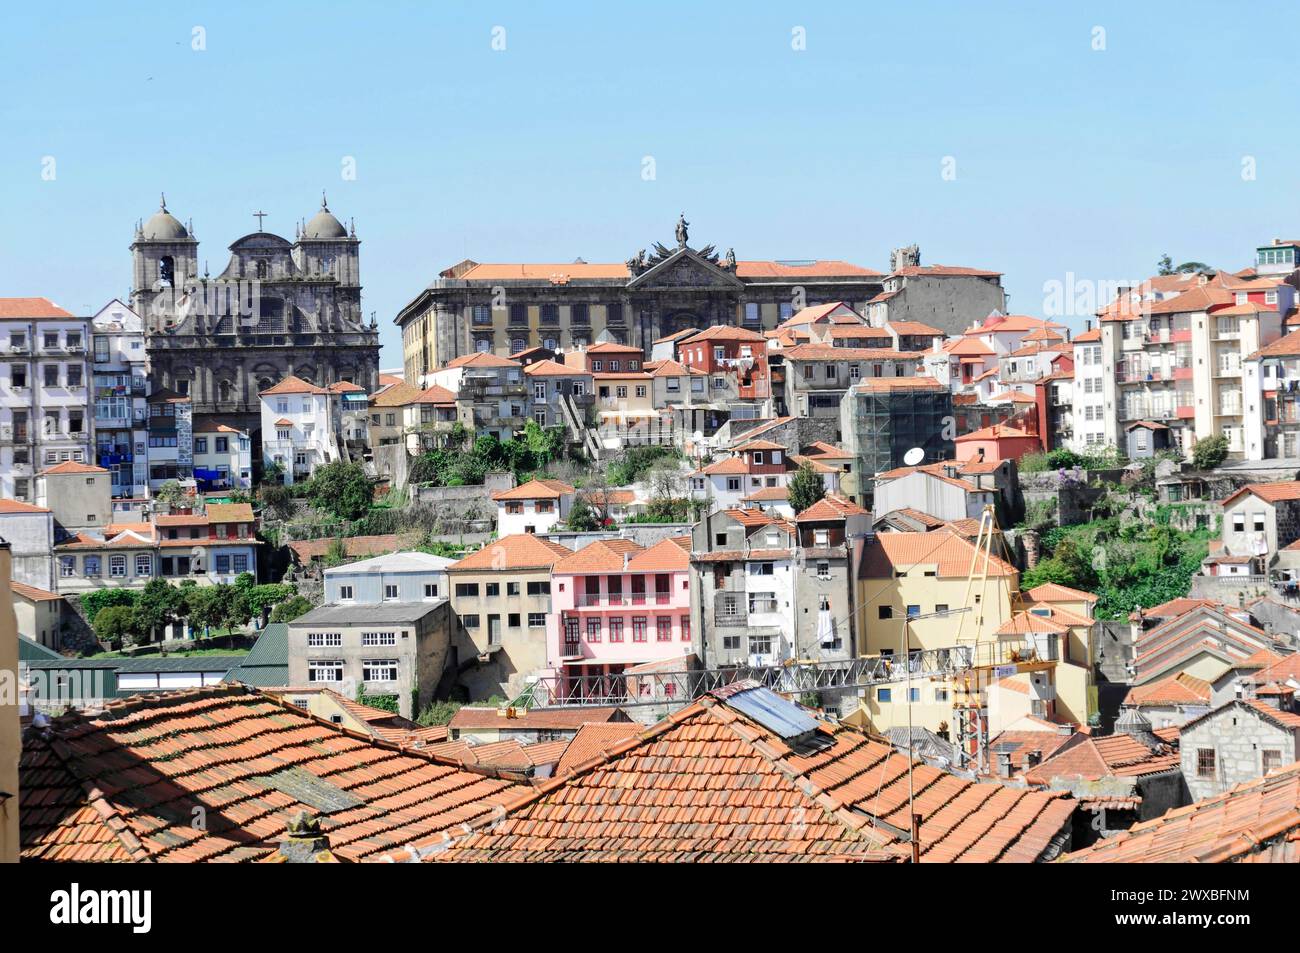 Vieille ville de Porto, vue sur les bâtiments traditionnels et les églises dans une vieille ville, Porto, Nord du Portugal, Portugal Banque D'Images